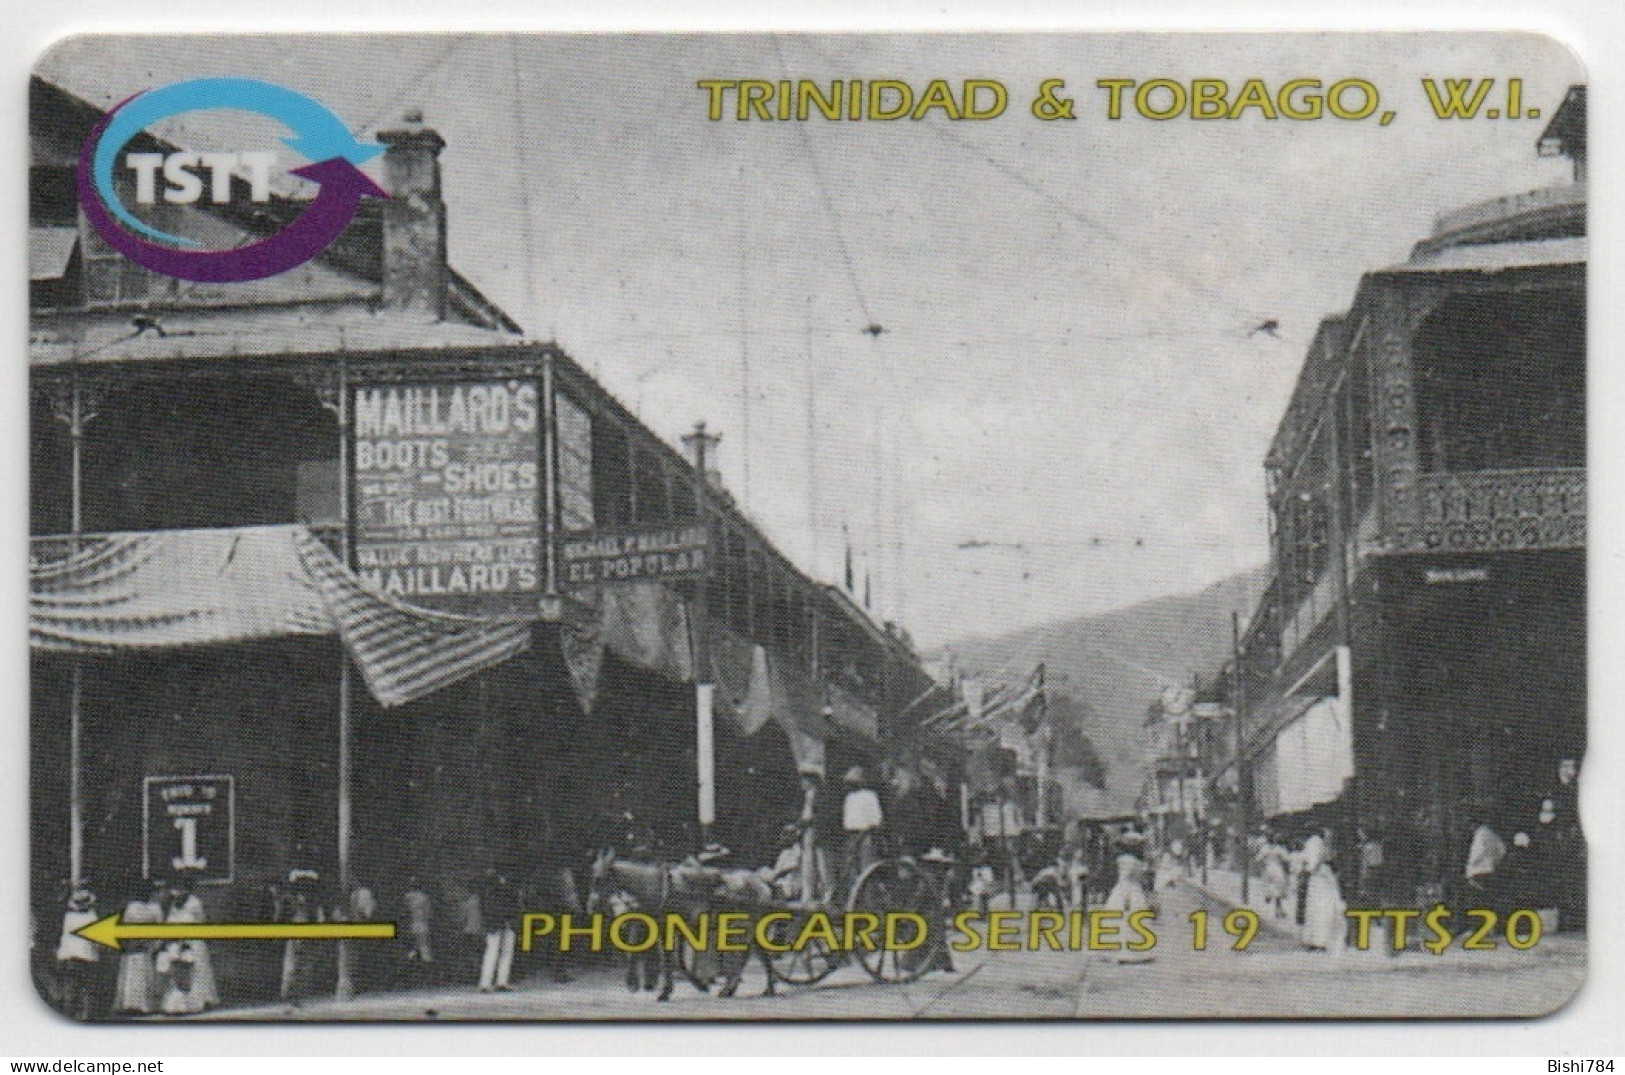 Trinidad & Tobago - Root Of Frederick Street - 267CTTA - Trinidad & Tobago